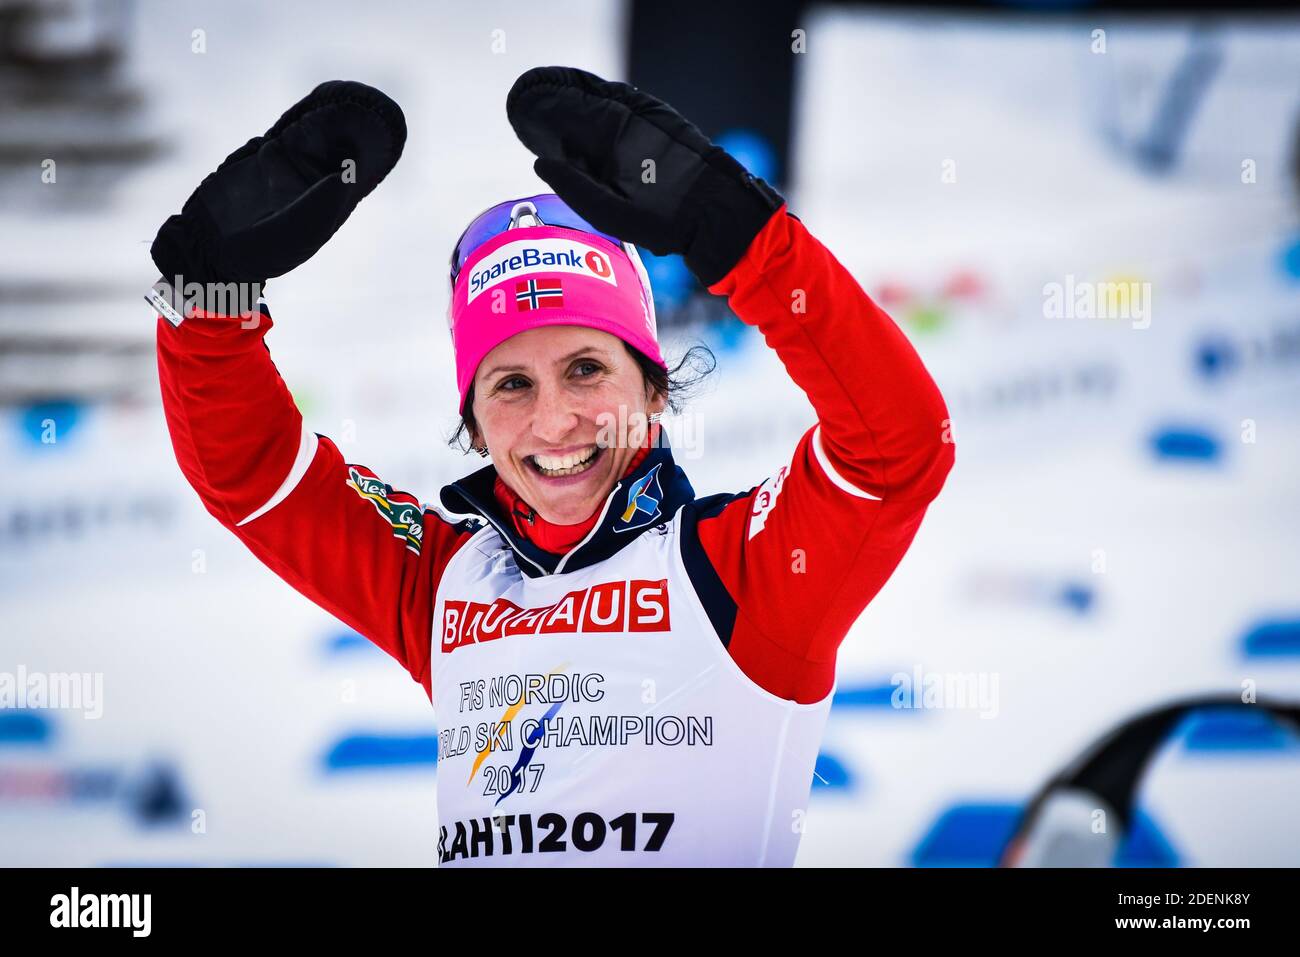 Marit Bjørgen (Bjoergen), la norvegese Women's Ski Team, dopo aver vinto il classico 10-K ai campionati mondiali di sci nordico FIS 2017 a Lahti, Finlandia. Foto Stock